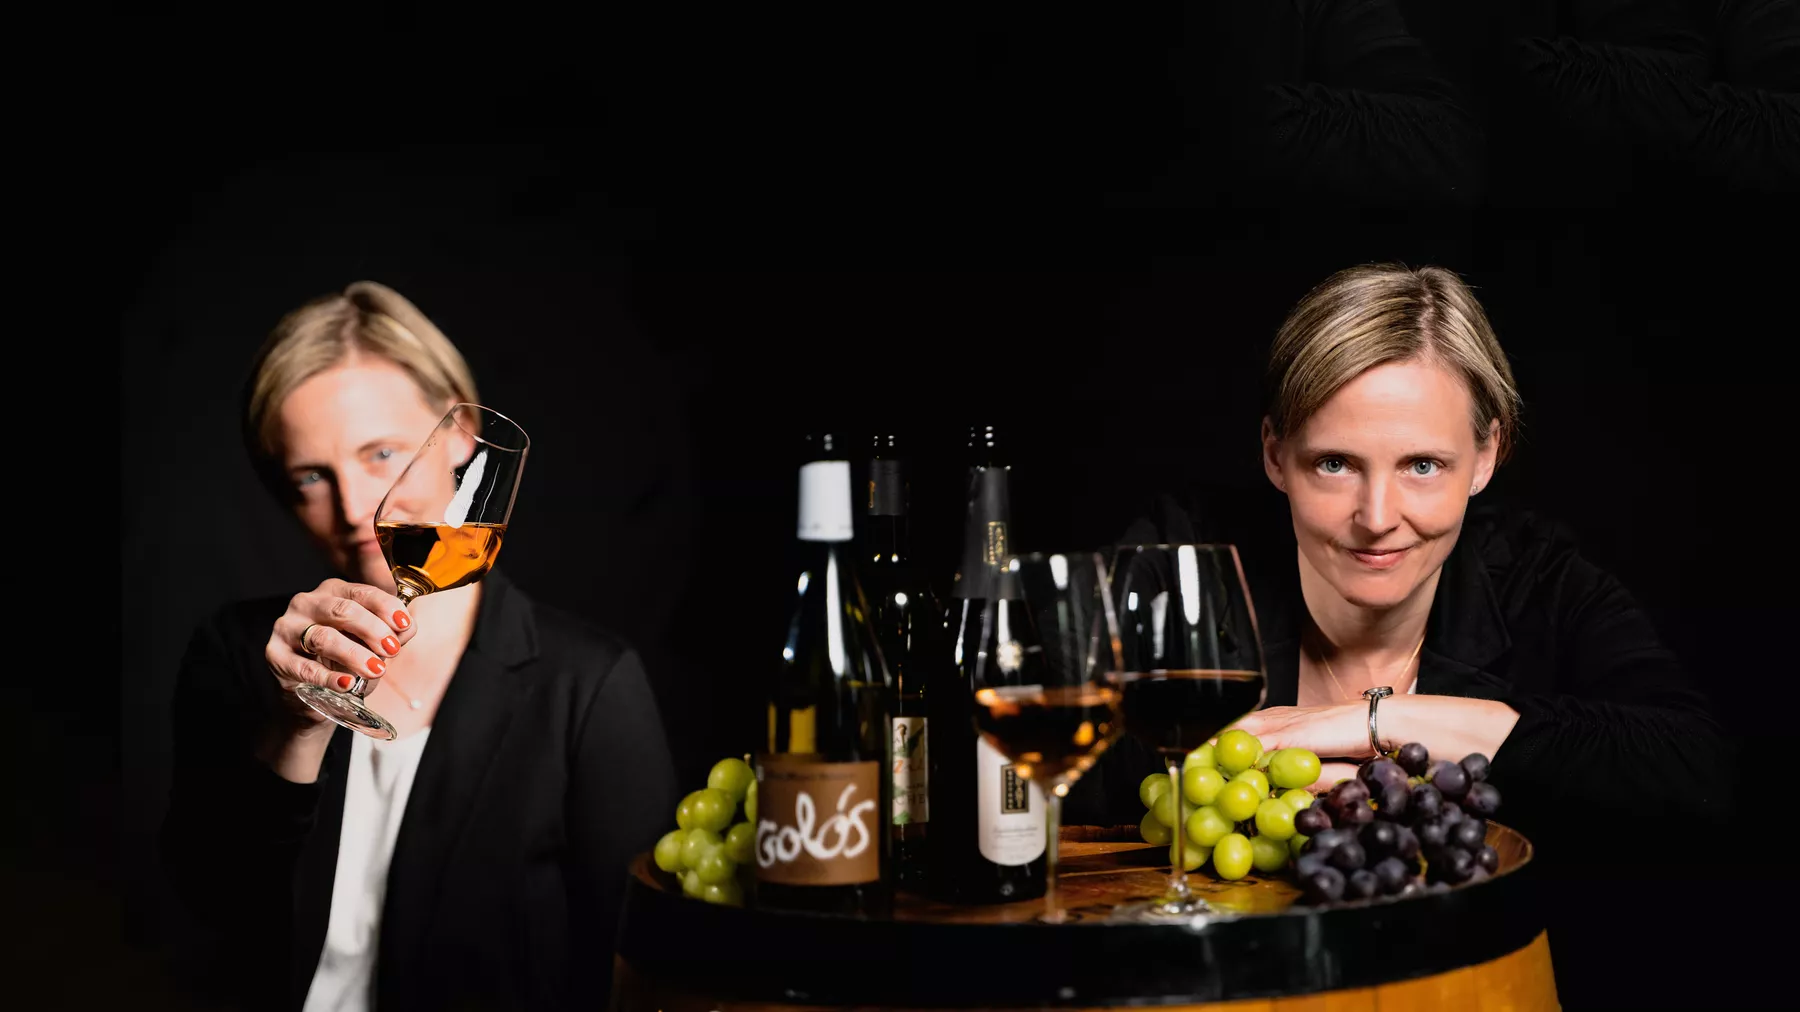 gleiche Frau steht links mit schräg gehaltenem Weinglas und rechts hinter dem Weinfass und lächelt in die Kamera, auf dem Fass stehen zwei Weingläser, Weinflaschen und Weintrauben